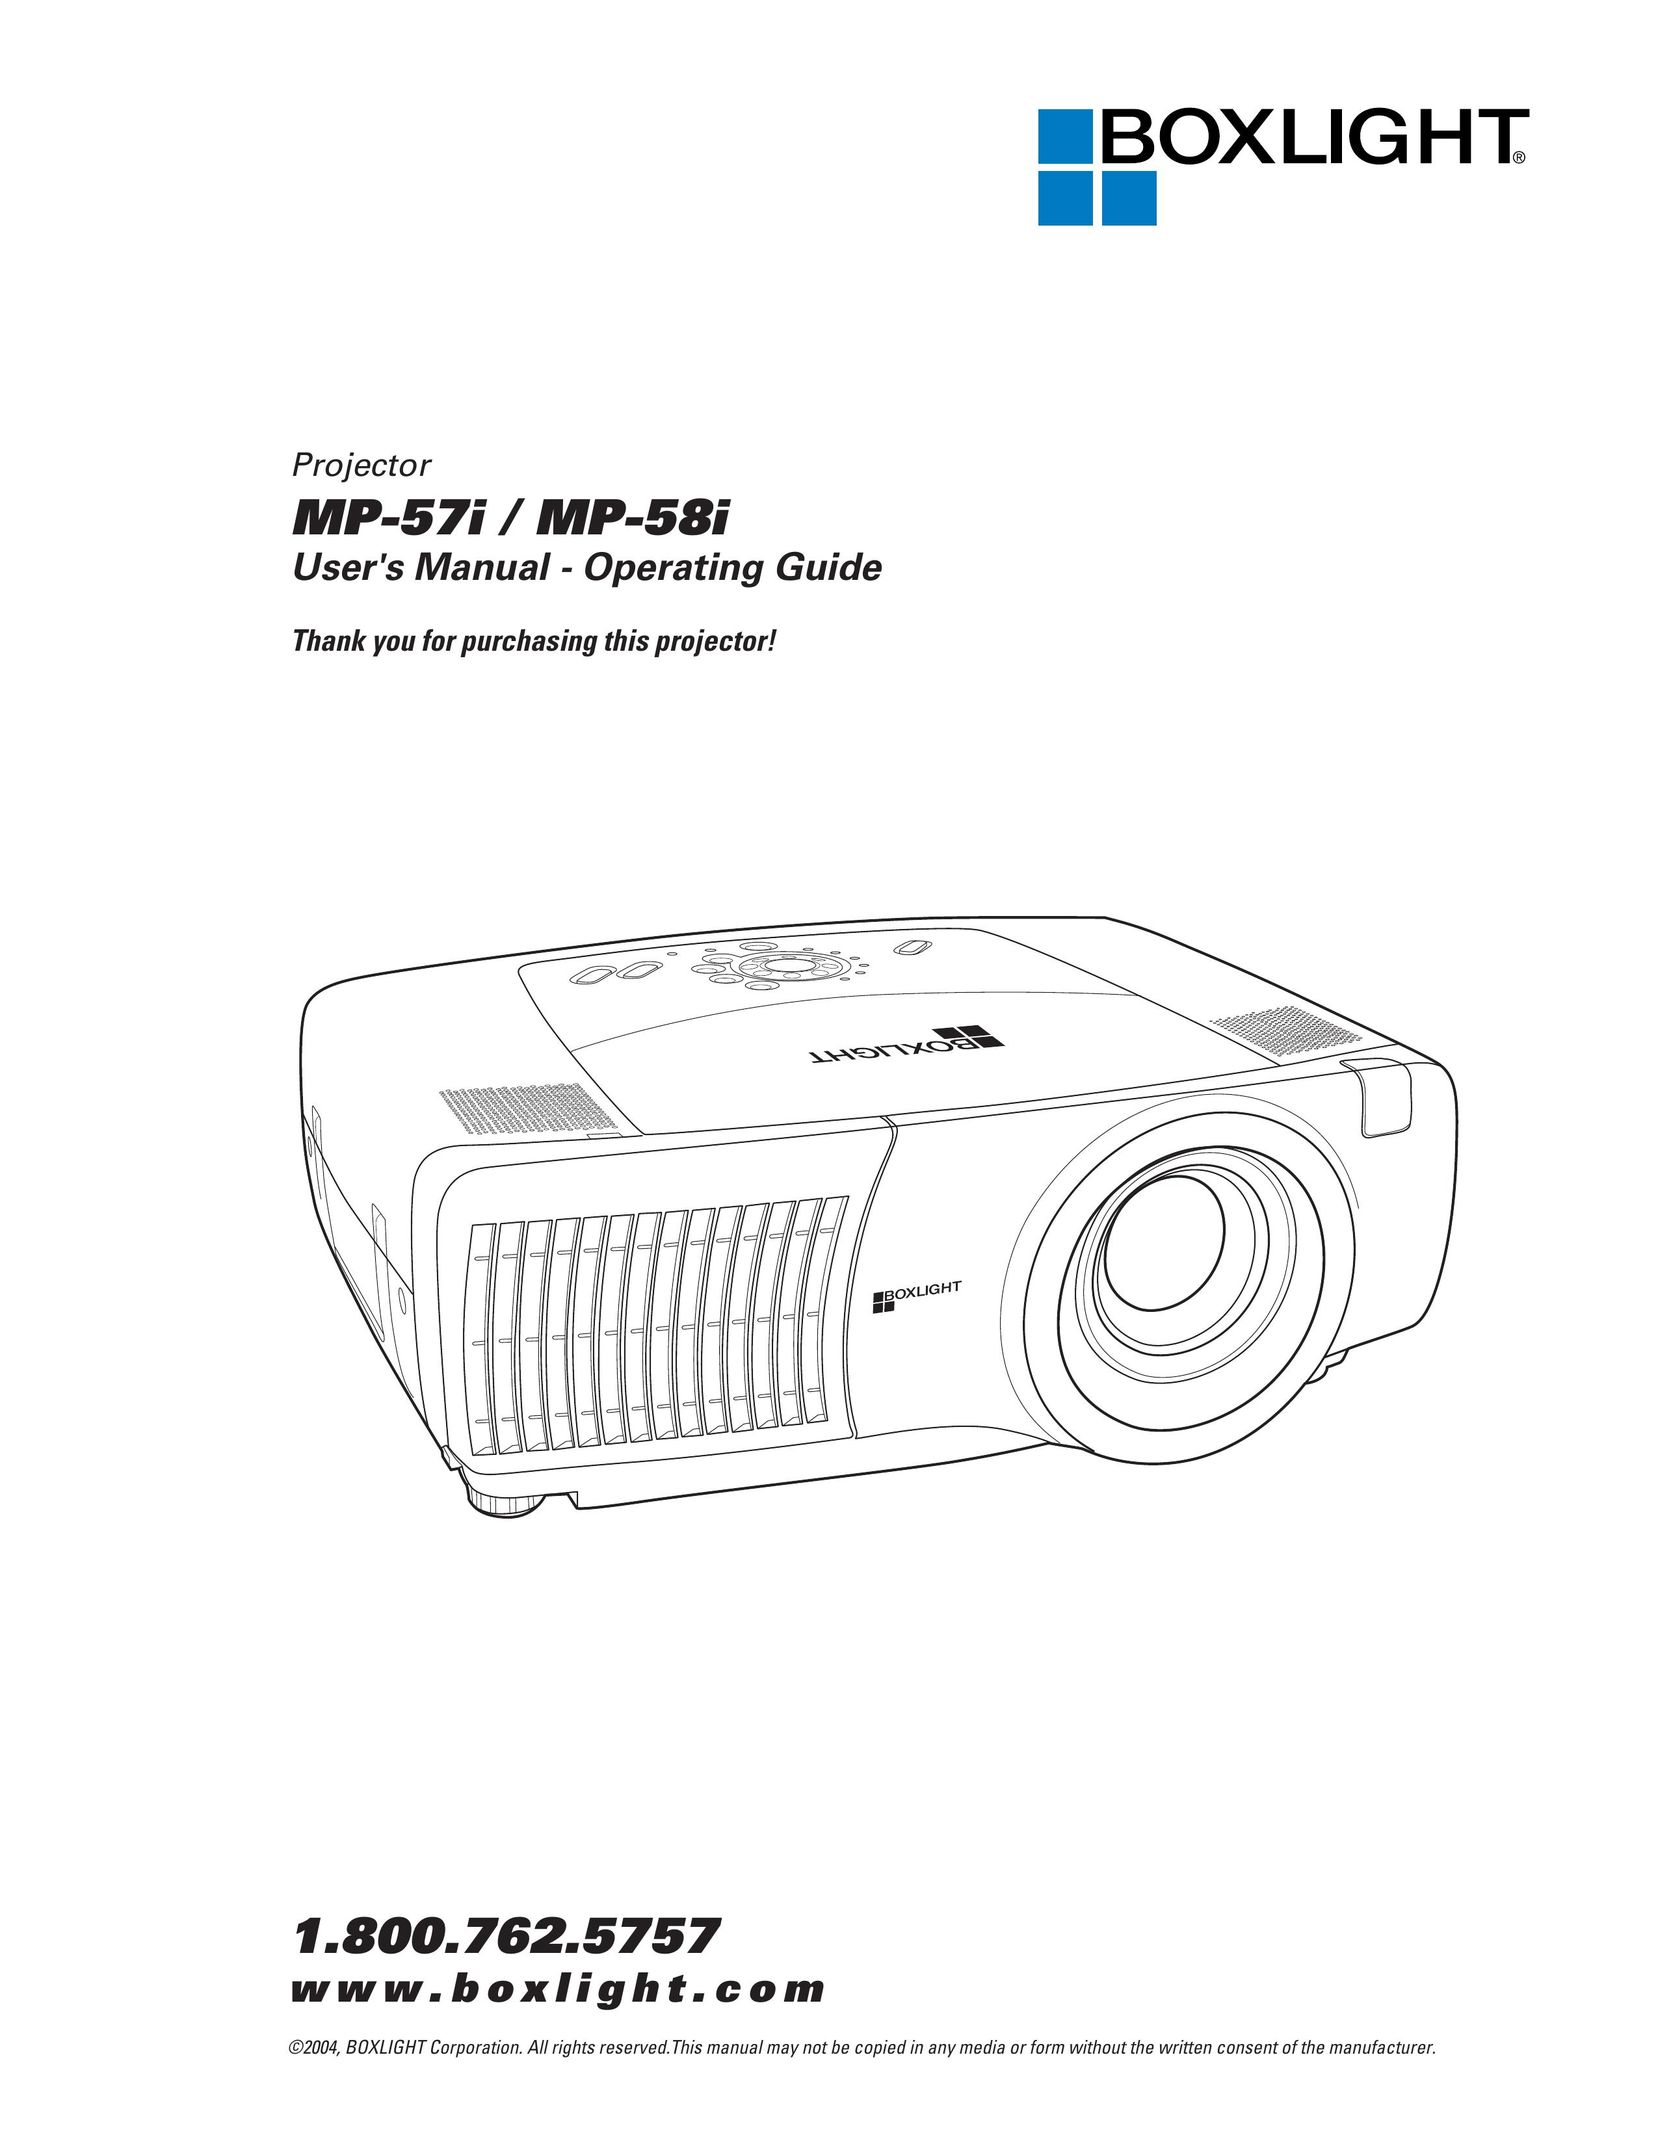 BOXLIGHT MP-57i Projector User Manual